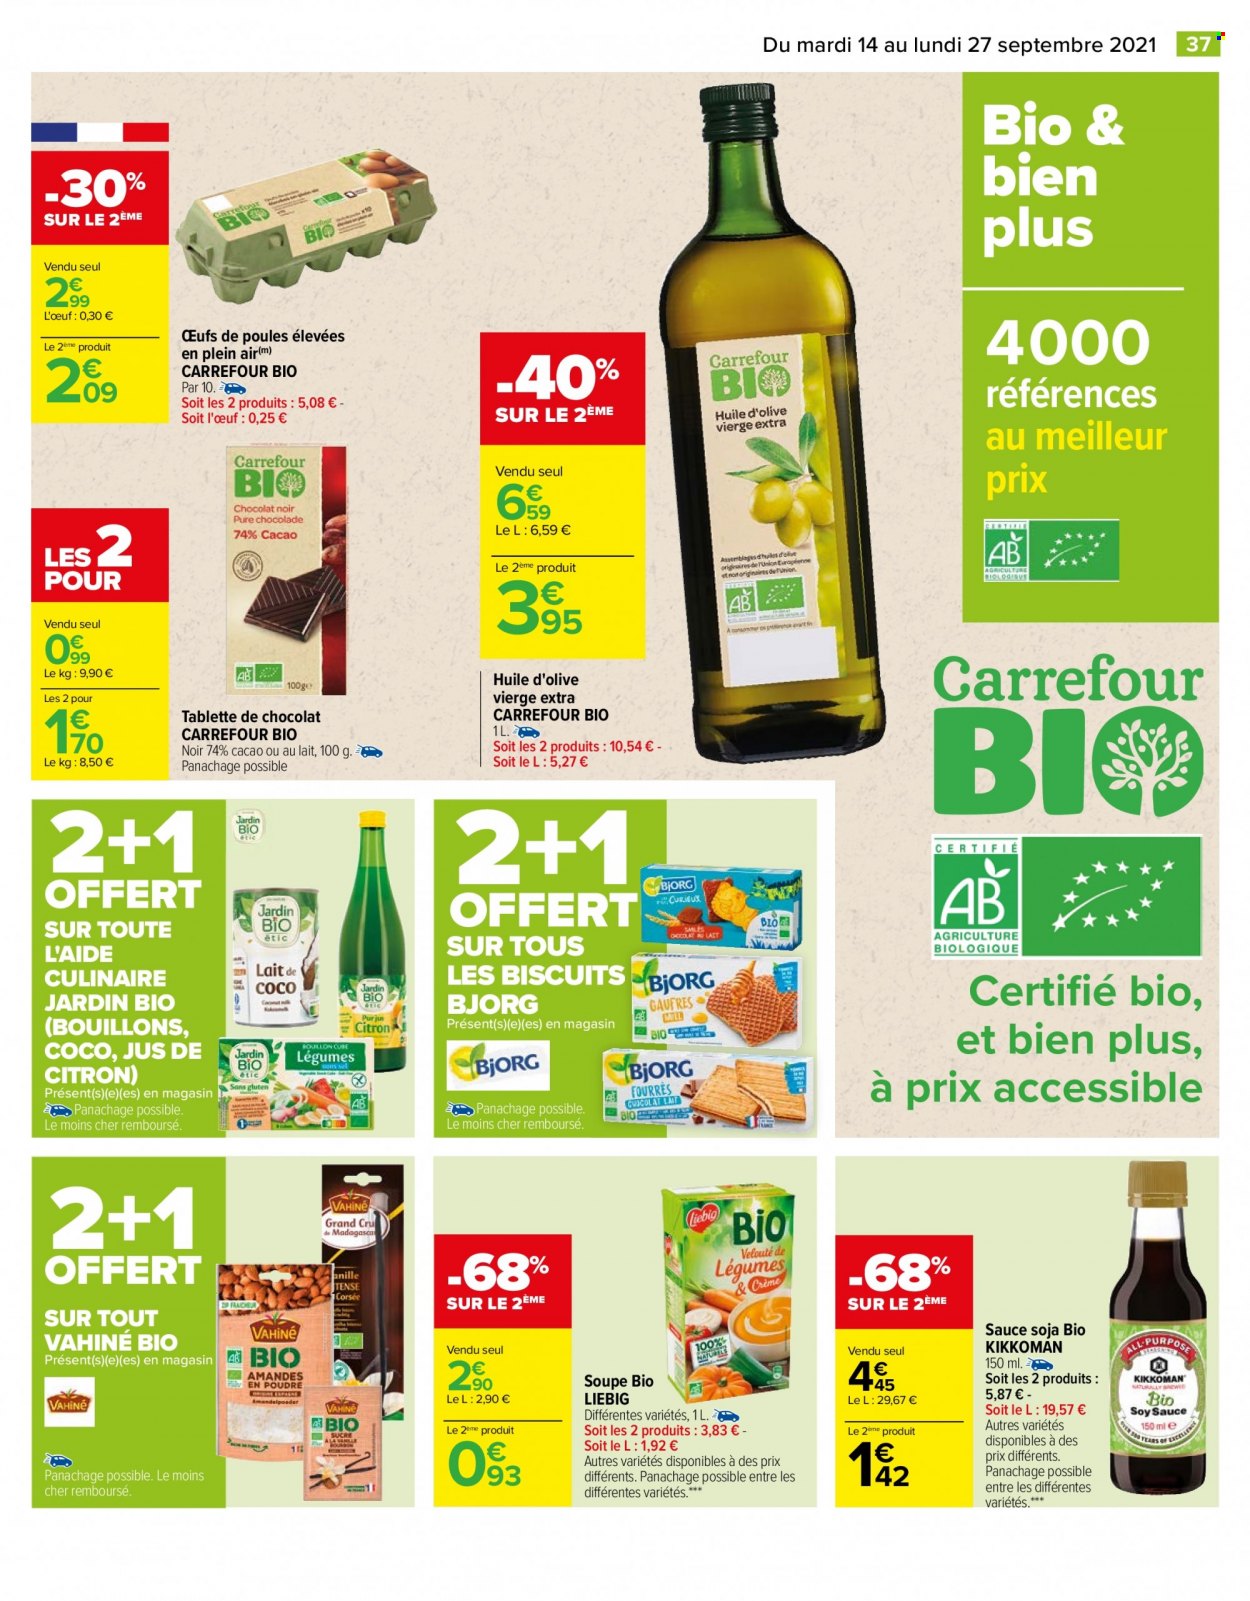 thumbnail - Catalogue Carrefour Hypermarchés - 14/09/2021 - 27/09/2021 - Produits soldés - soupe, Jardin BIO, Bjorg, œufs, chocolat, biscuits, huile, huile d'olive vierge extra, huile d'olive. Page 37.